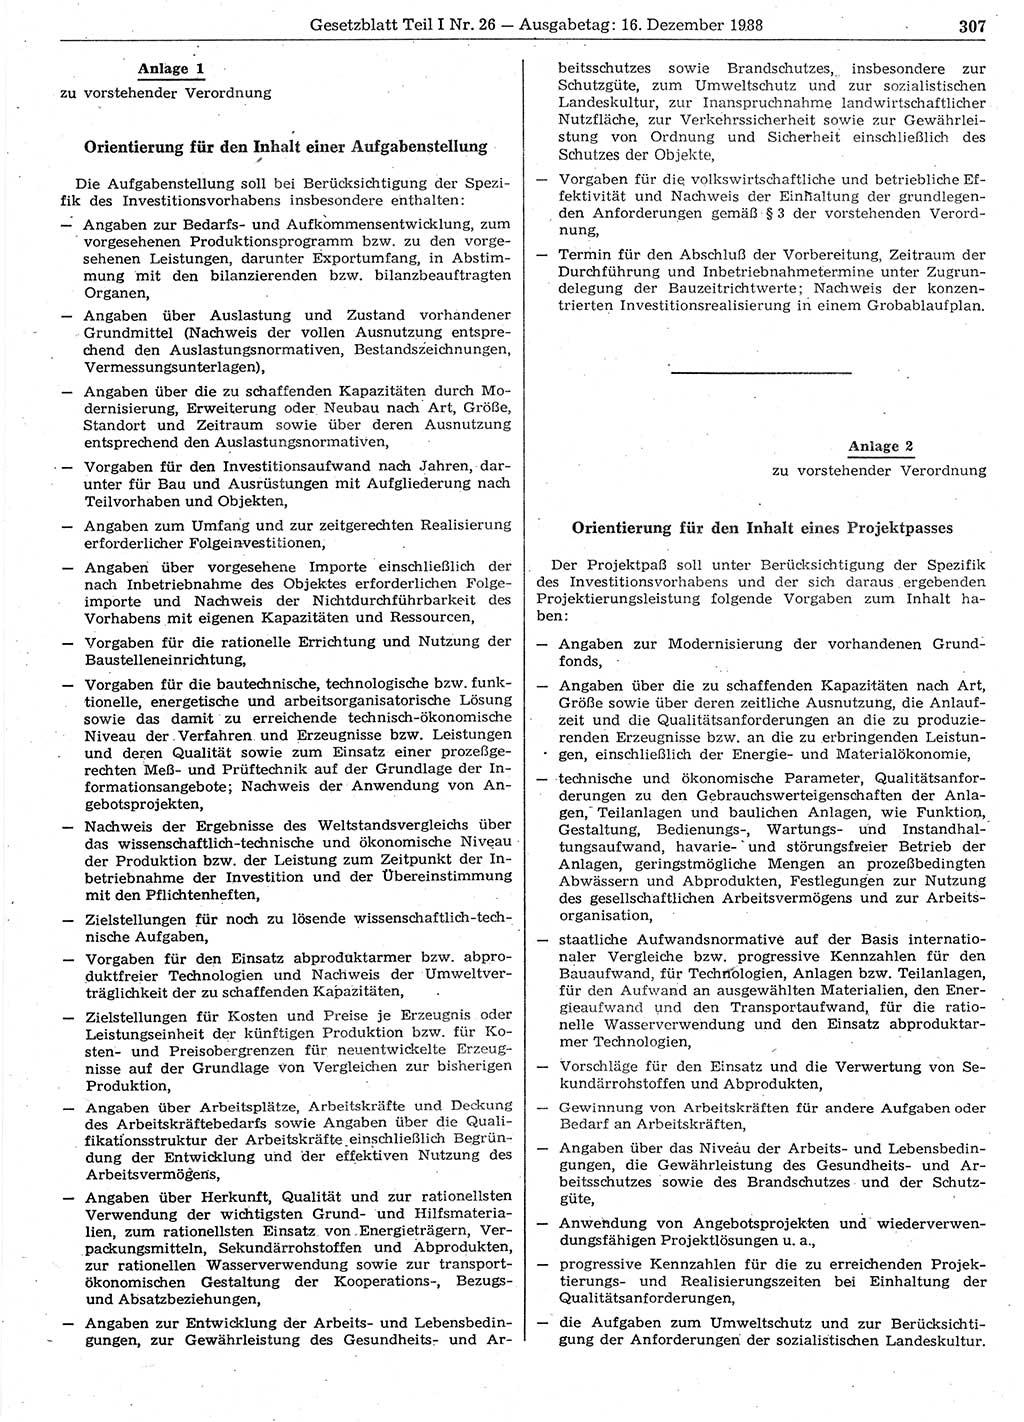 Gesetzblatt (GBl.) der Deutschen Demokratischen Republik (DDR) Teil Ⅰ 1988, Seite 307 (GBl. DDR Ⅰ 1988, S. 307)